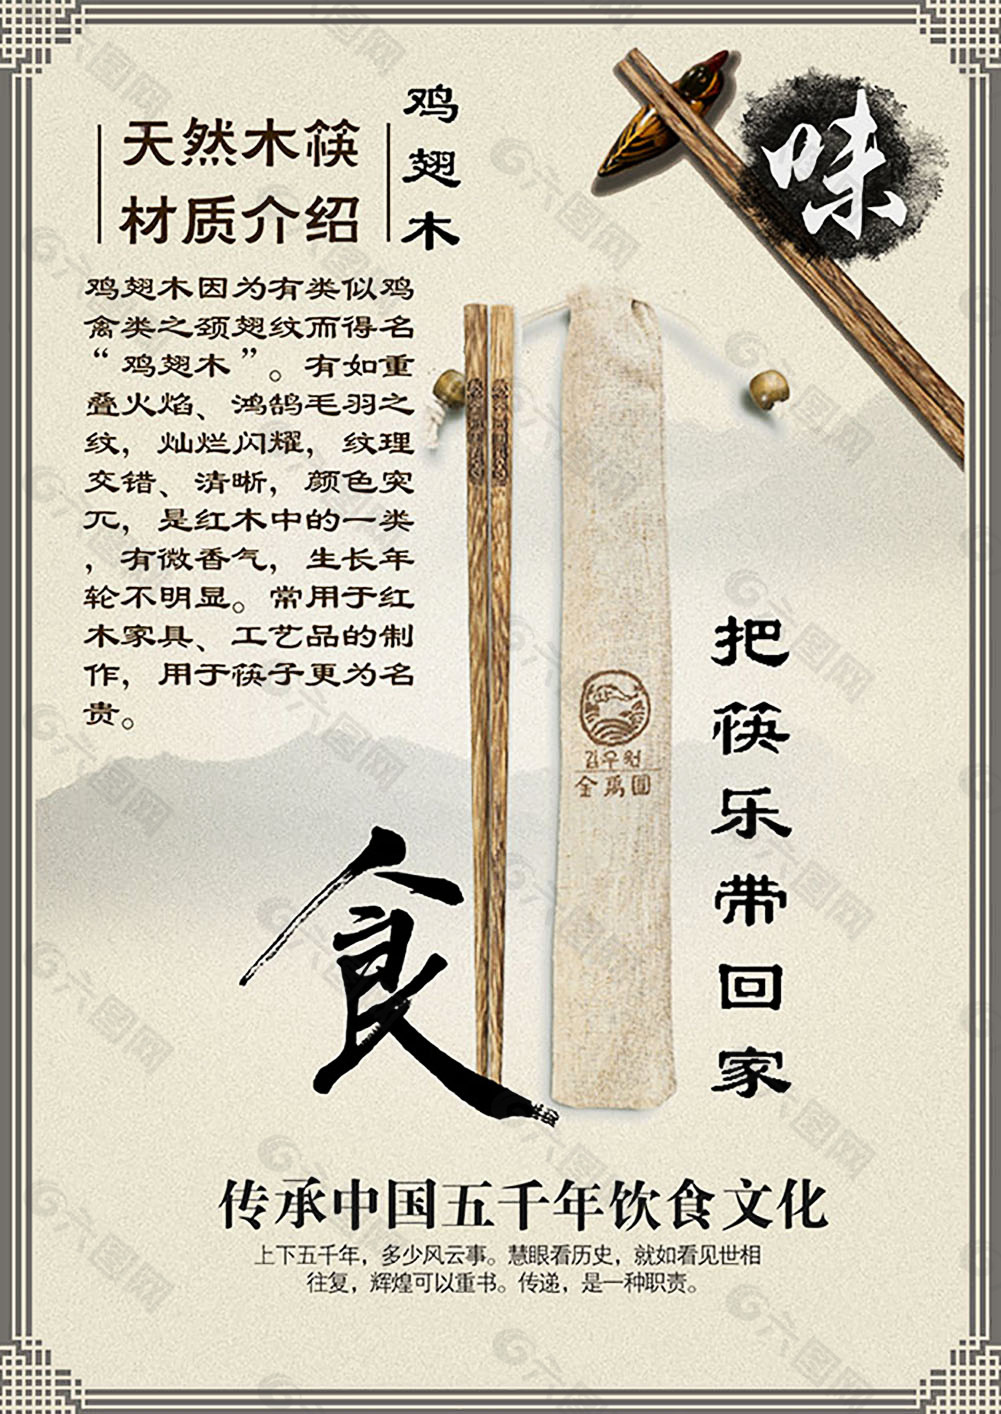 木筷饮食文化